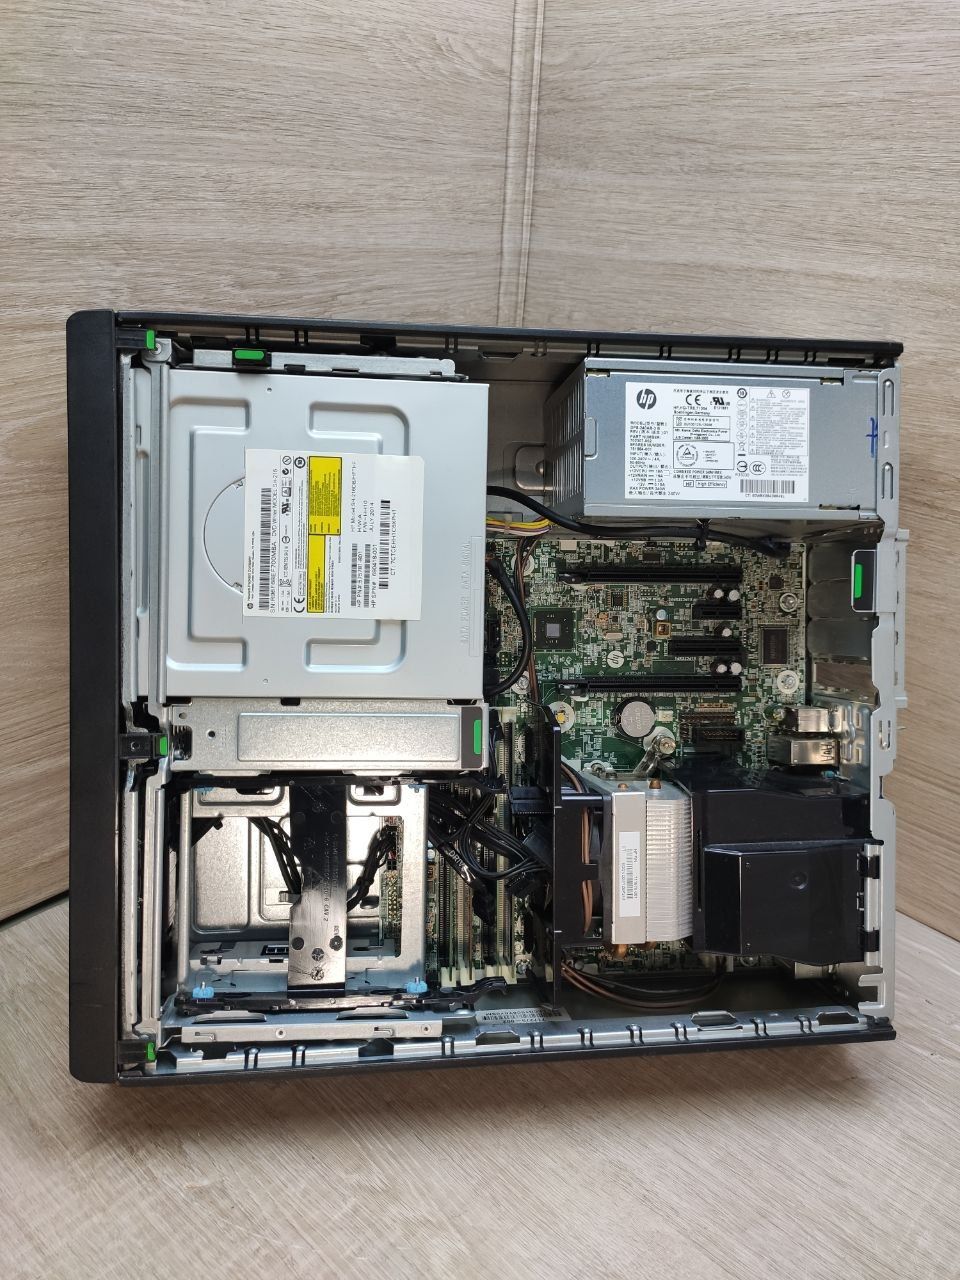 HP Z230 Workstation (Xeon E3-1245v4 /16gb ddr3)